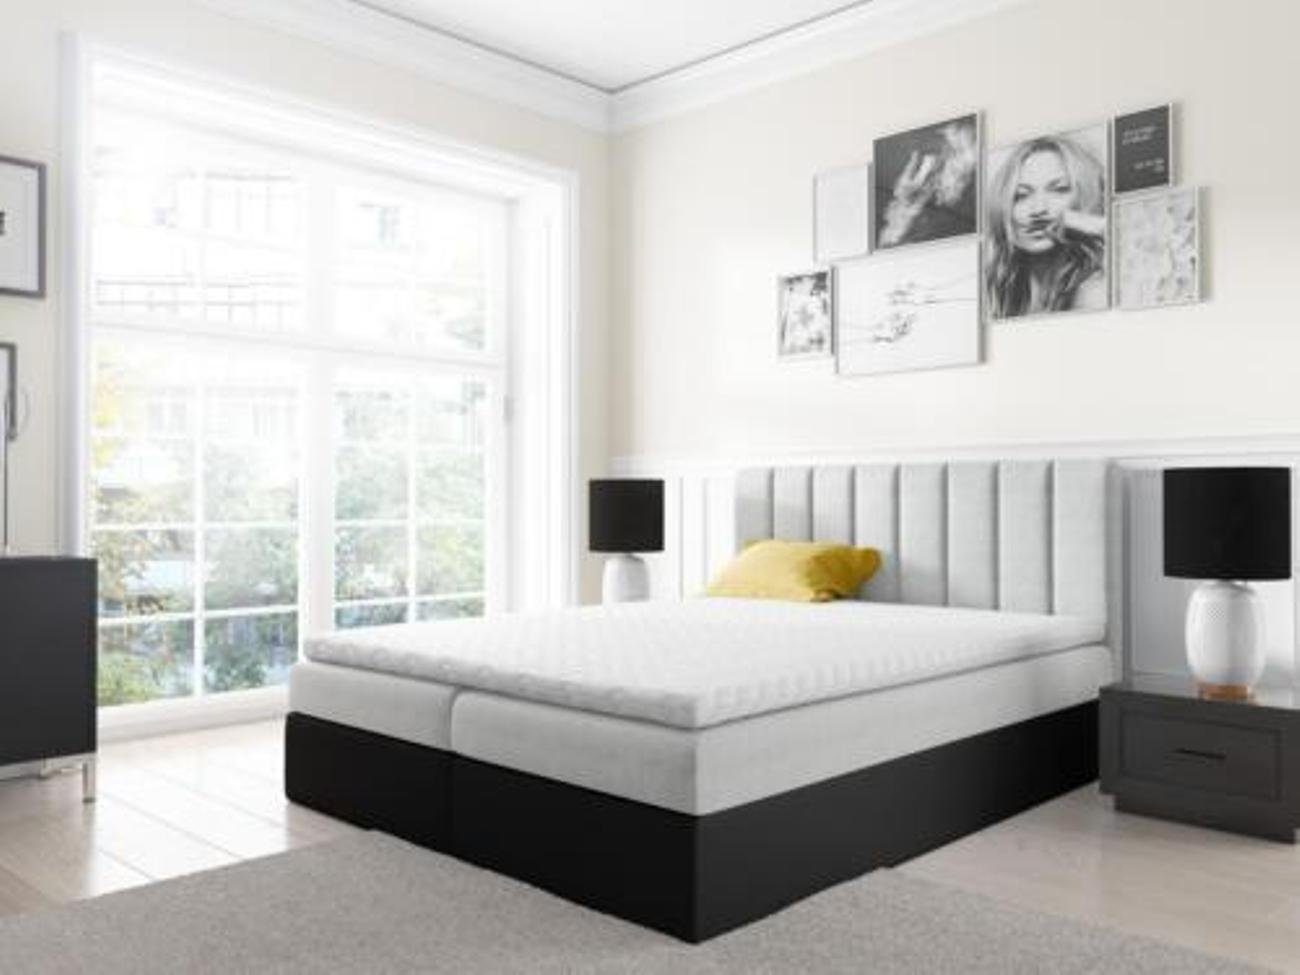 JVmoebel Bett, Boxspringbett Doppelbett Bett mit Bettkasten Ehebett Betten 180cm Weiß